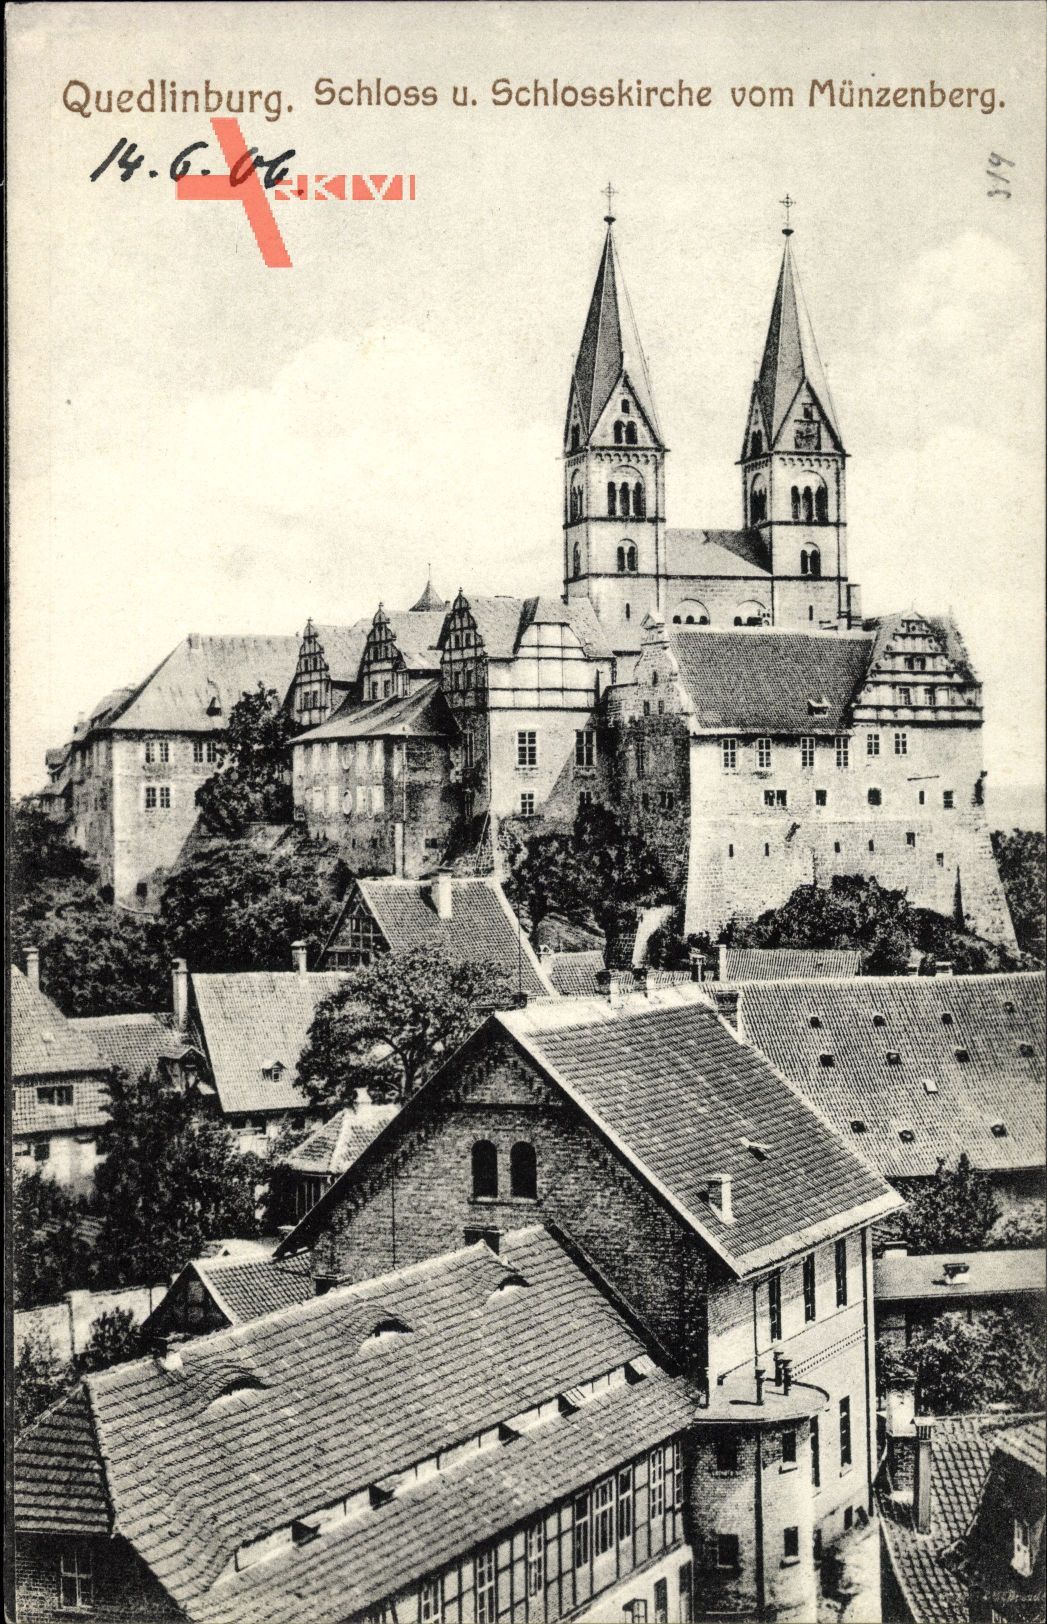 Quedlinburg, Blick auf das Schloss und Schlosskirche vom Münzenberg